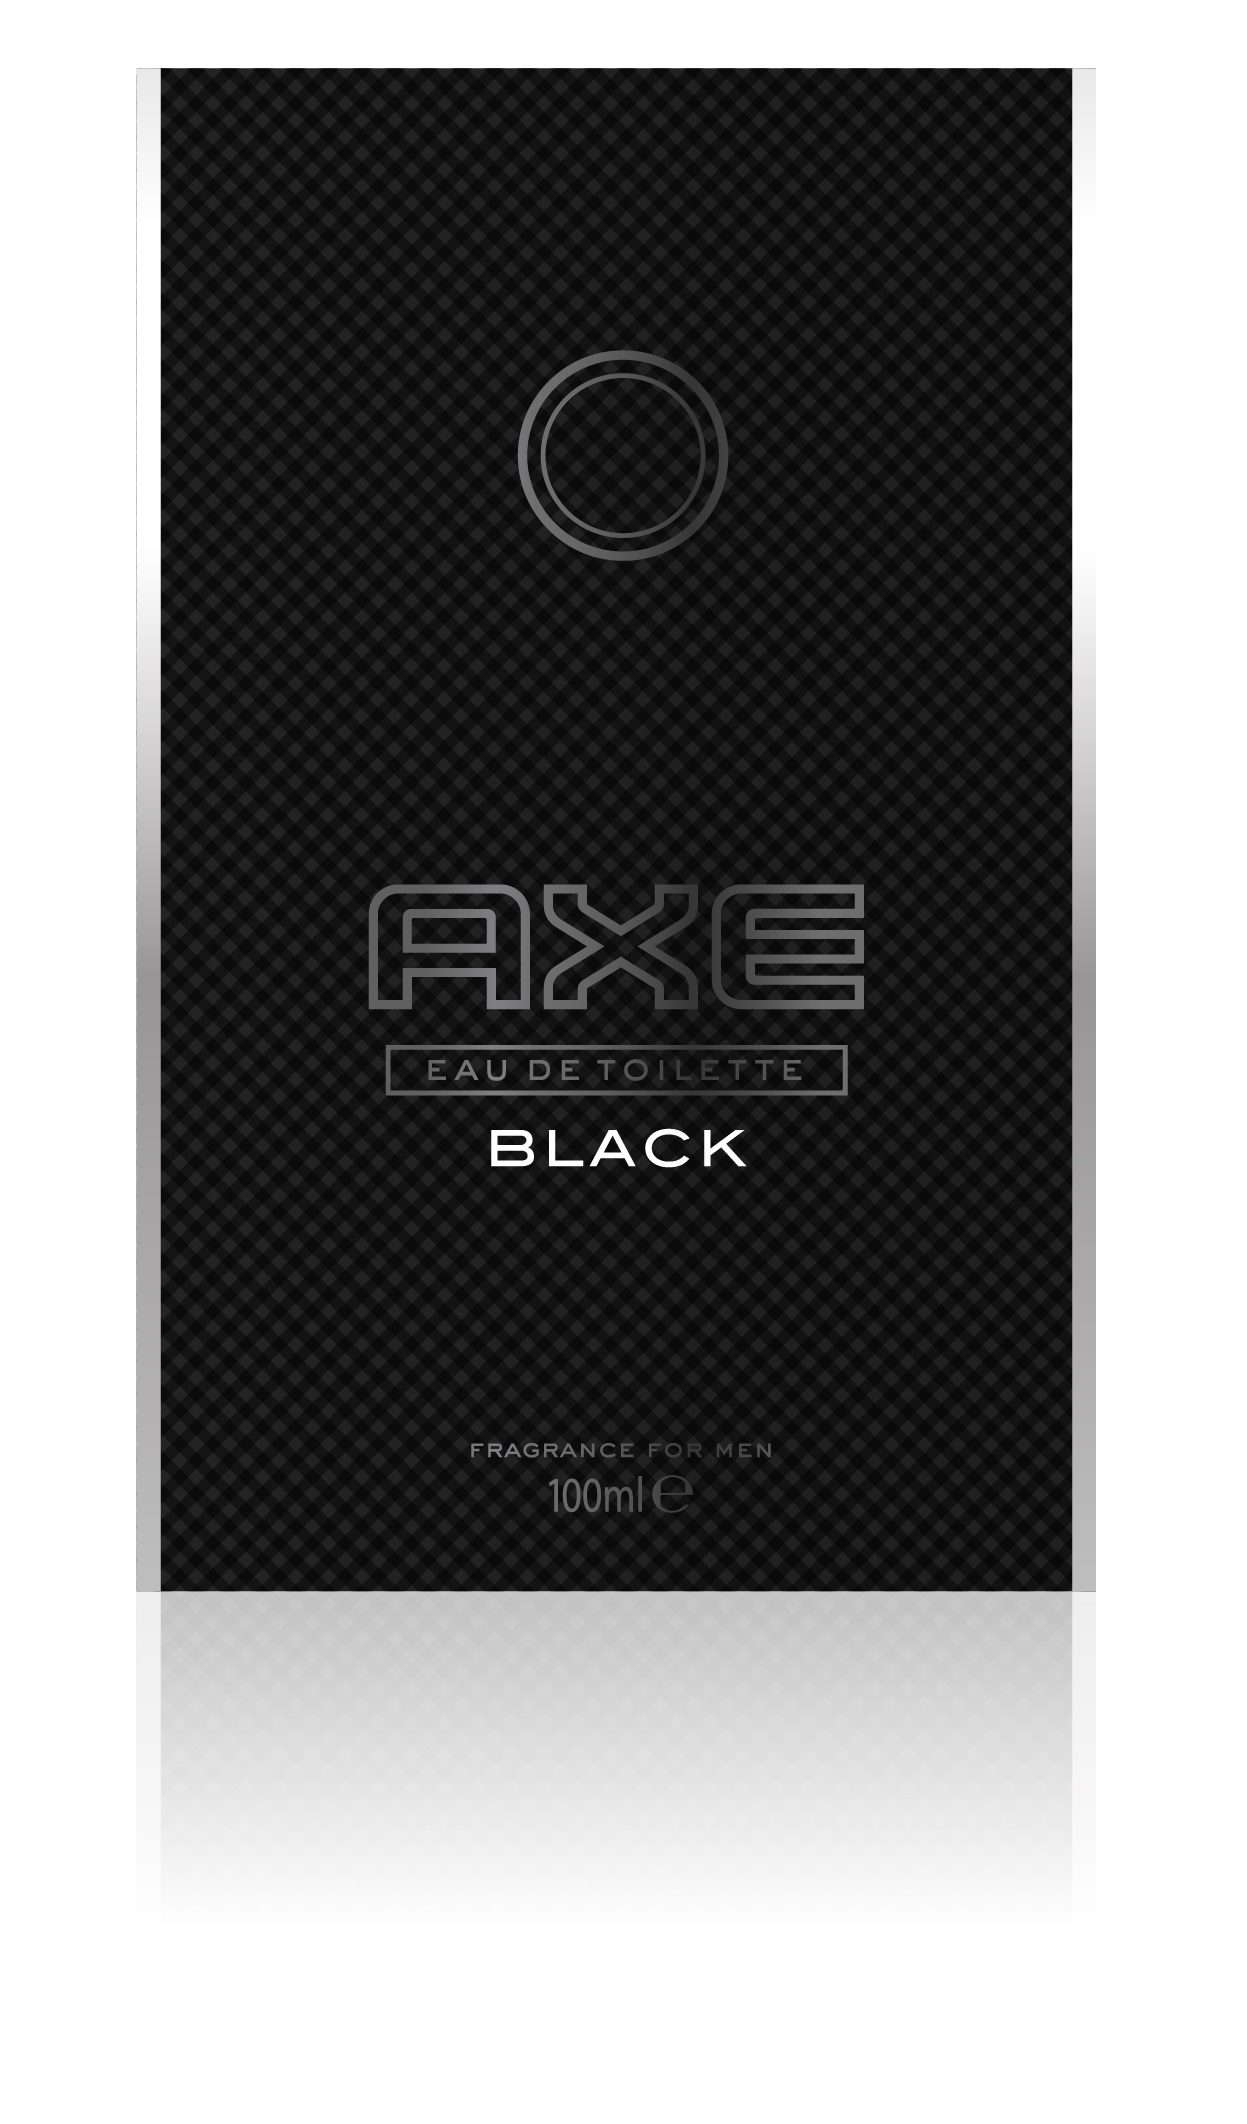 68-axe-black